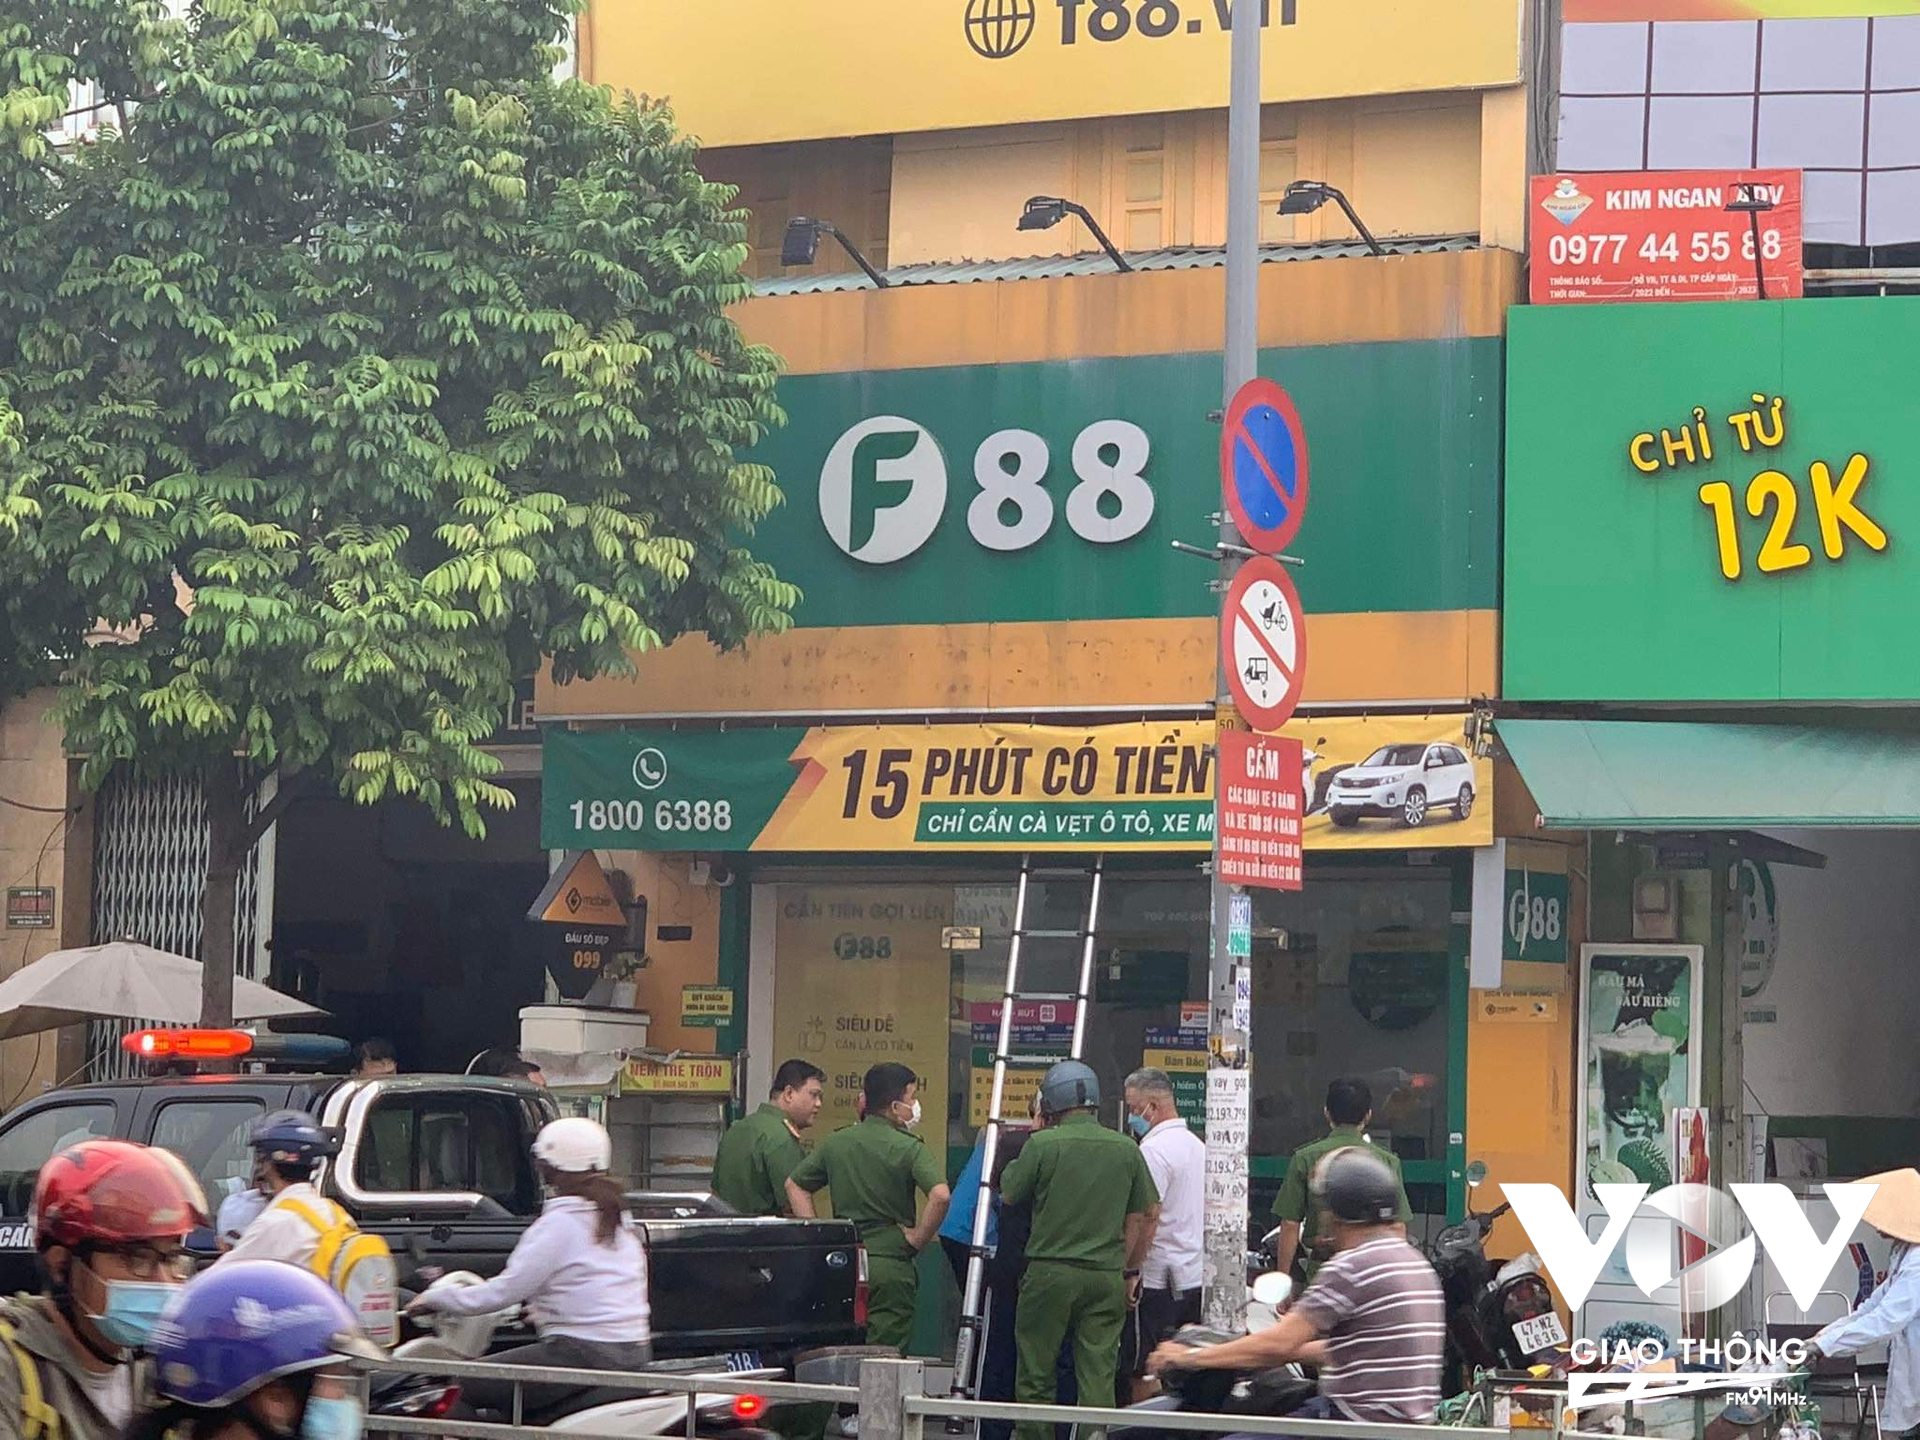 Hàng loạt chi nhánh của F88 ở quận Tân Phú bị khám xét